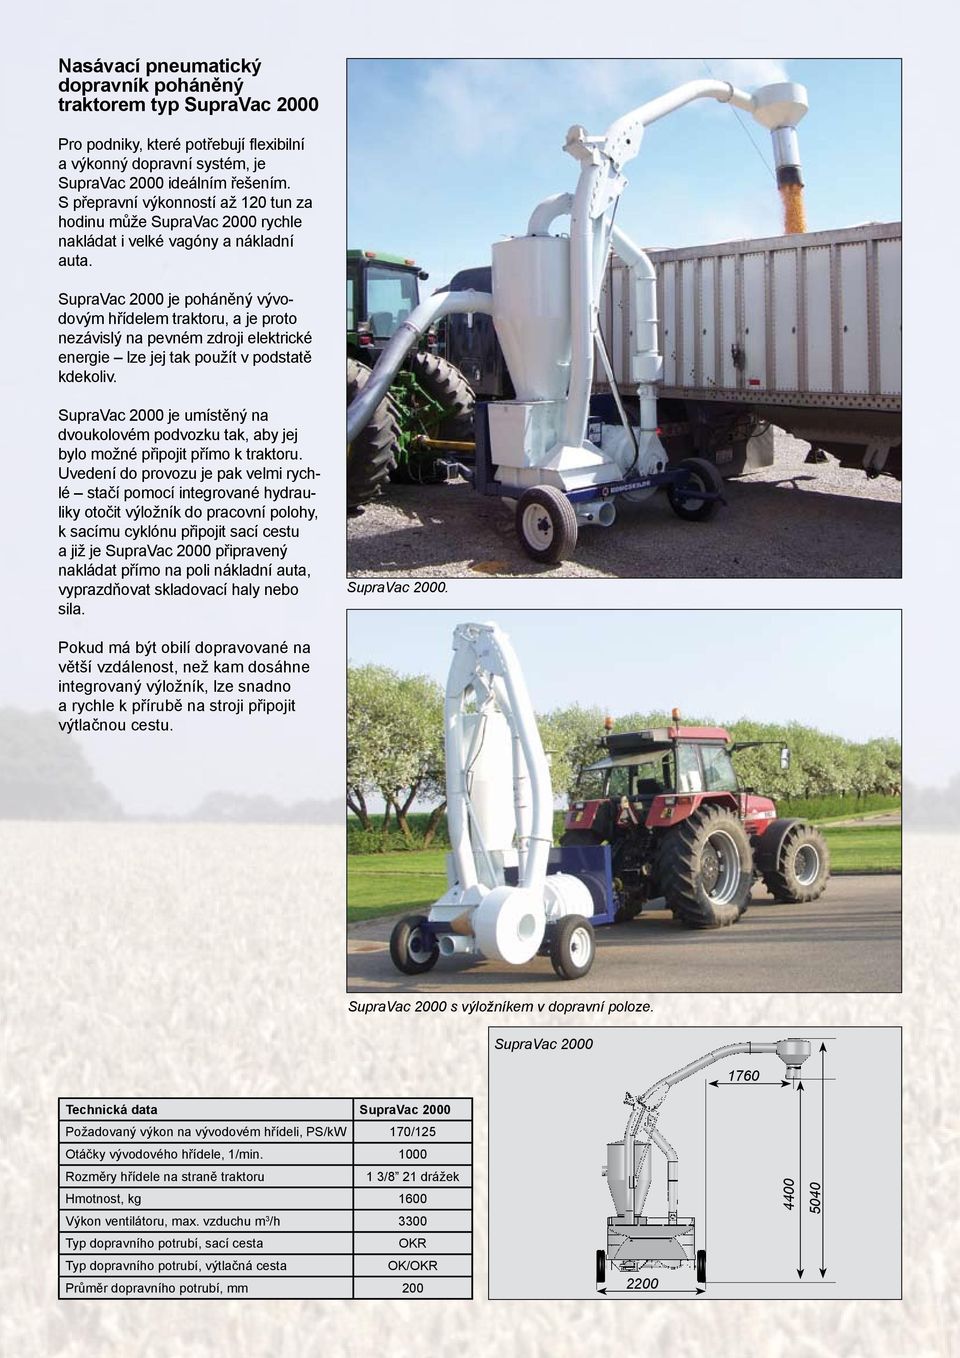 SupraVac je poháněný vývodovým hřídelem traktoru, a je proto nezávislý na pevném zdroji elektrické energie lze jej tak použít v podstatě kdekoliv.